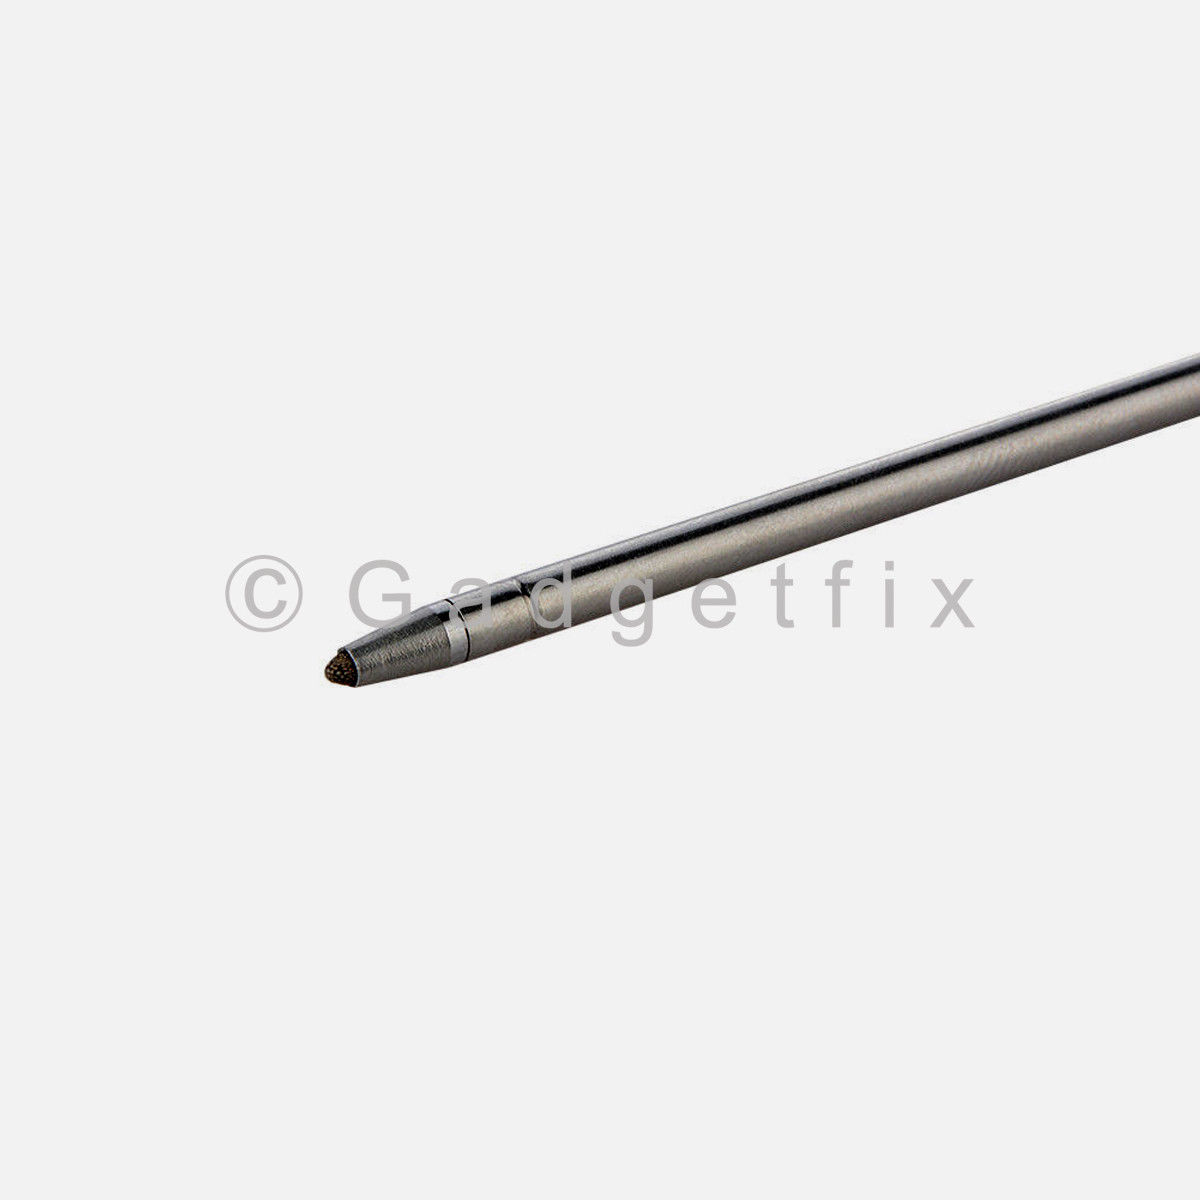 Touch Pen Stylus Pen S Pen Replacement For LG Stylo 3 LS777 L83BL L84VL M430